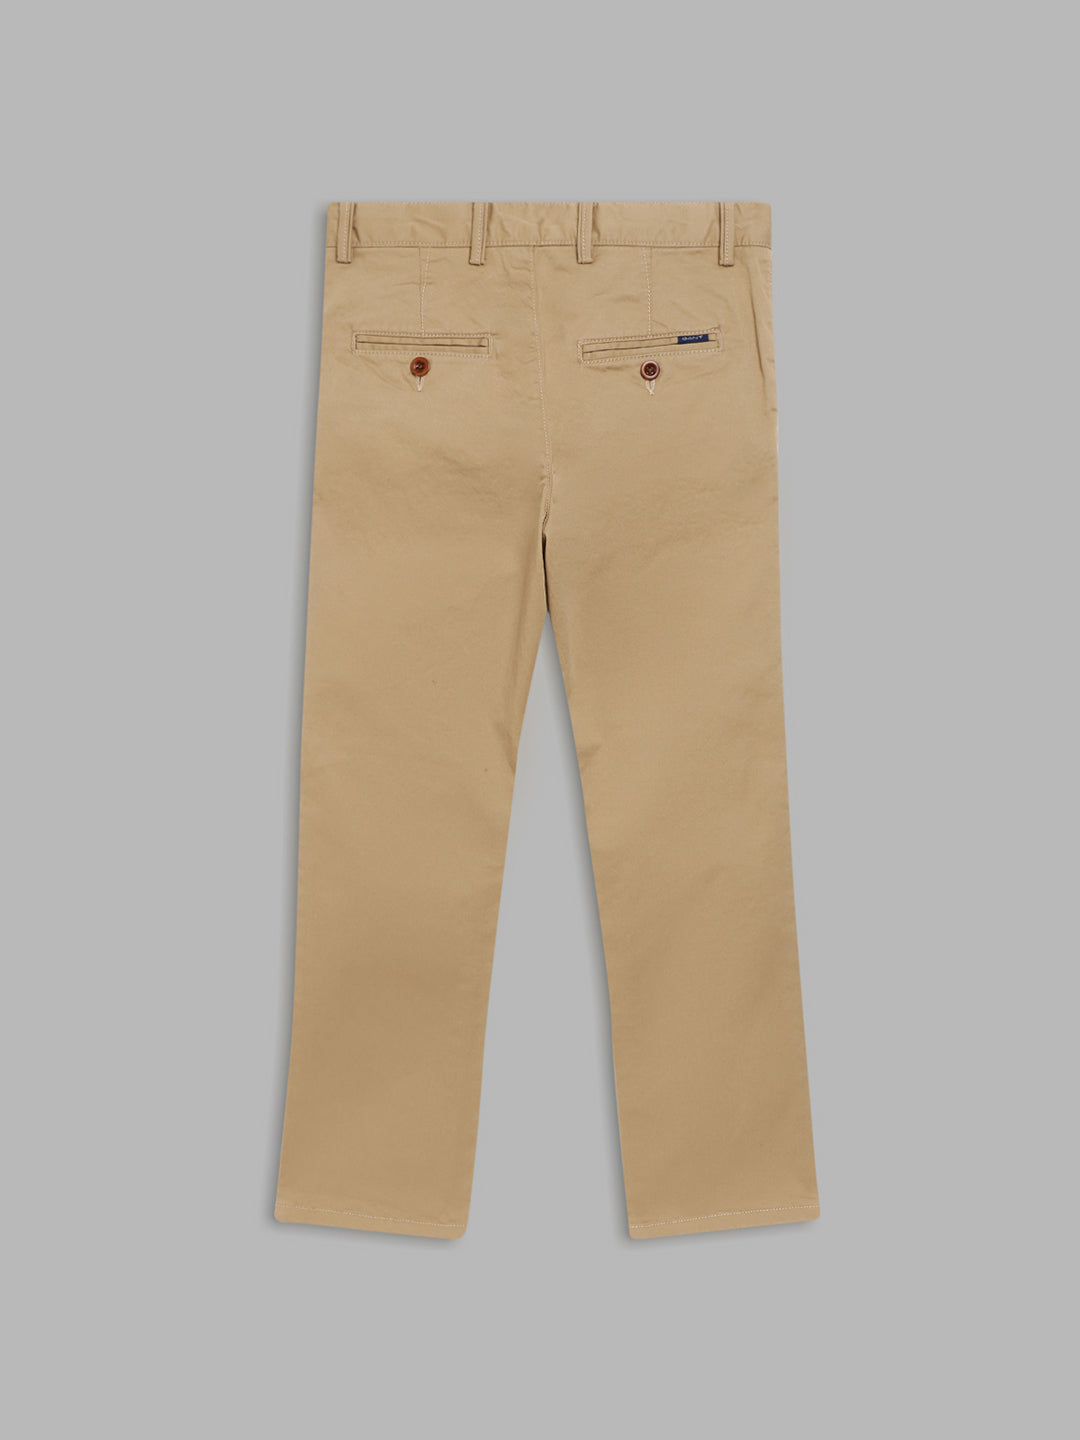 Gant Boys Beige Cotton Trousers